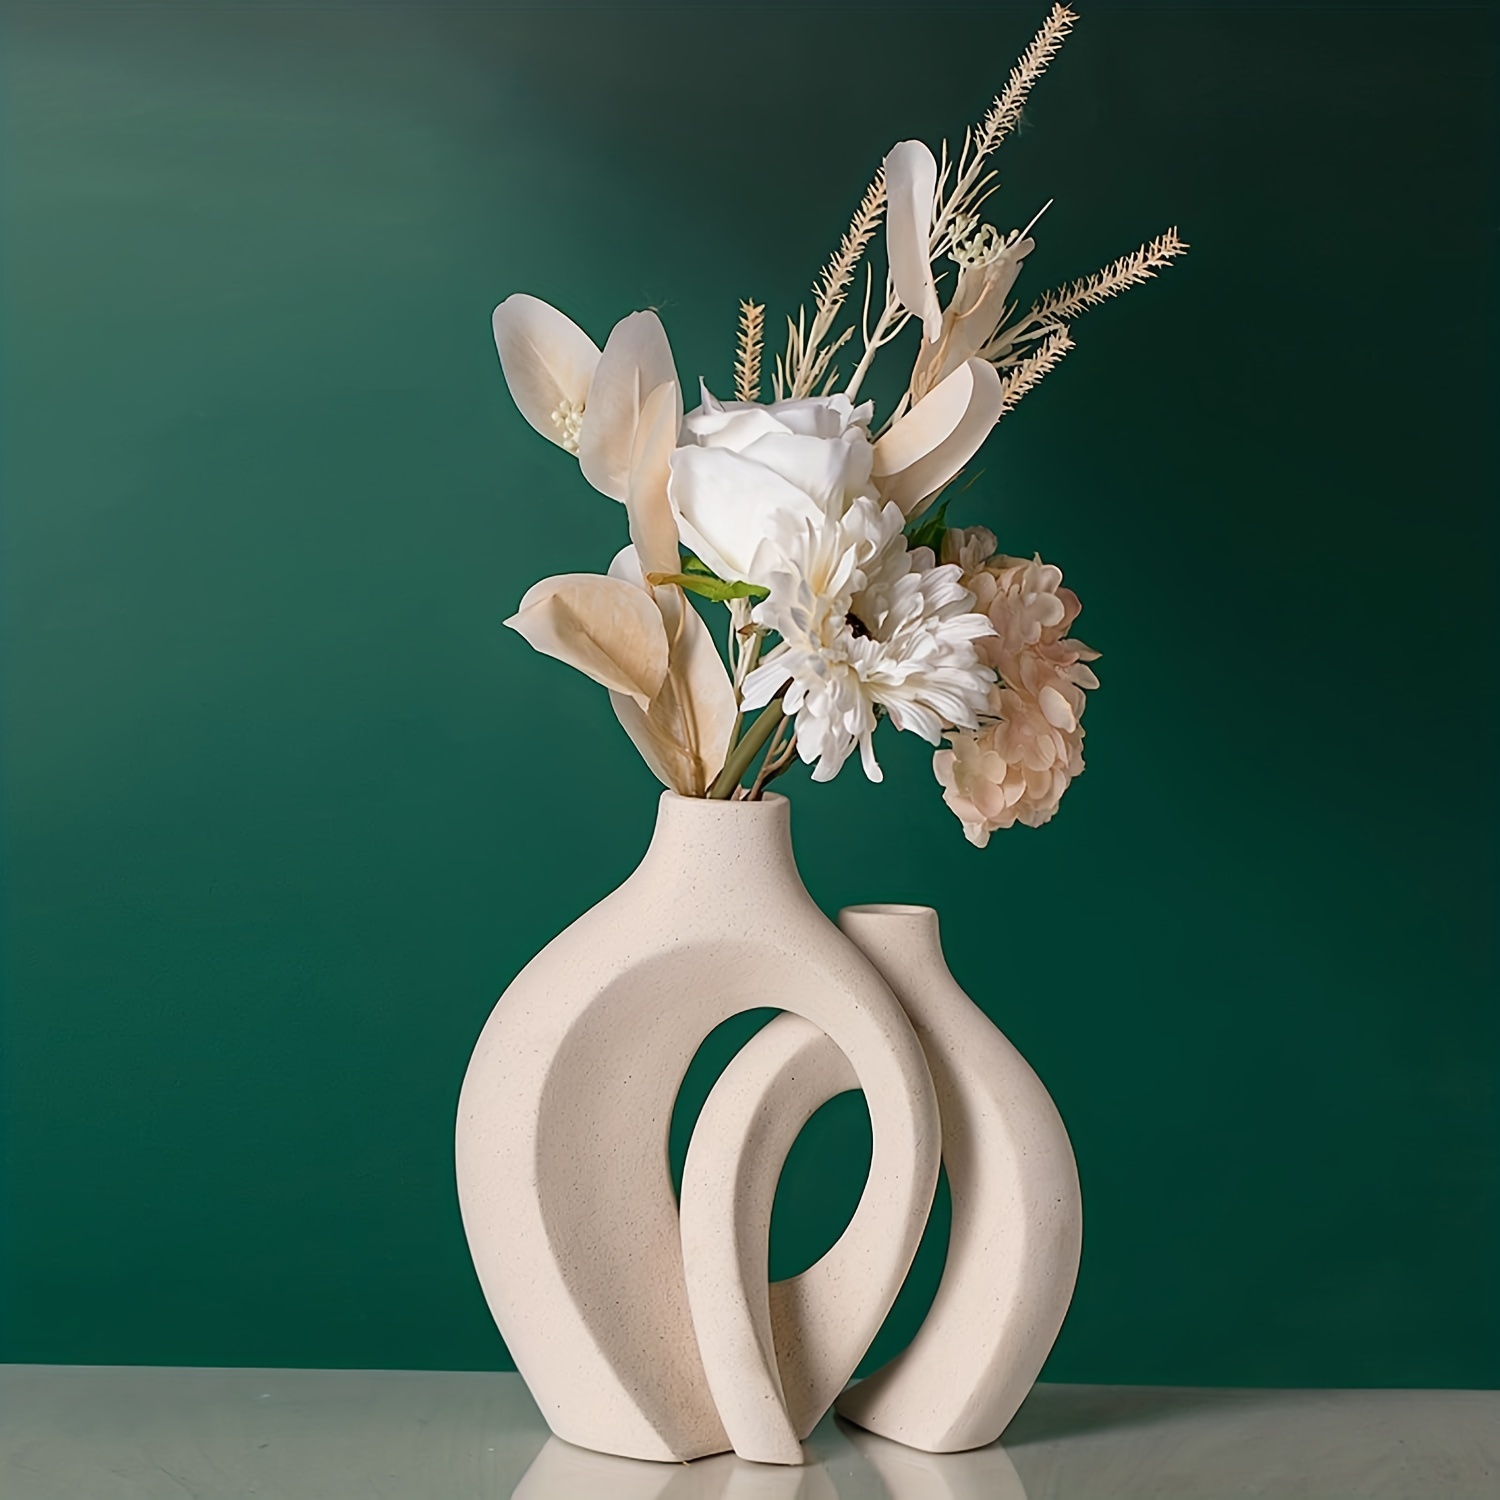 DOKOT Jarrón de cerámica, jarrón blanco para decoración minimalista, juego  de 2 jarrones decorativos bohemios para decoración moderna del hogar